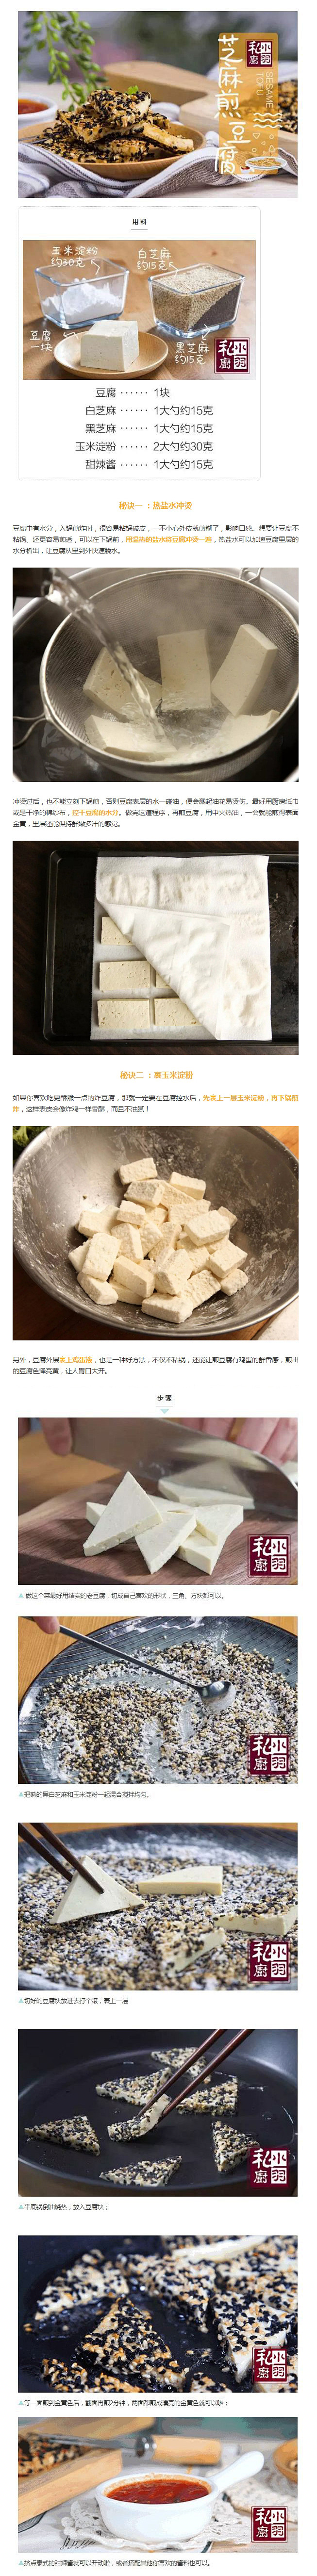 黑白芝麻 煎老豆腐
煎豆腐技巧：①热盐水...